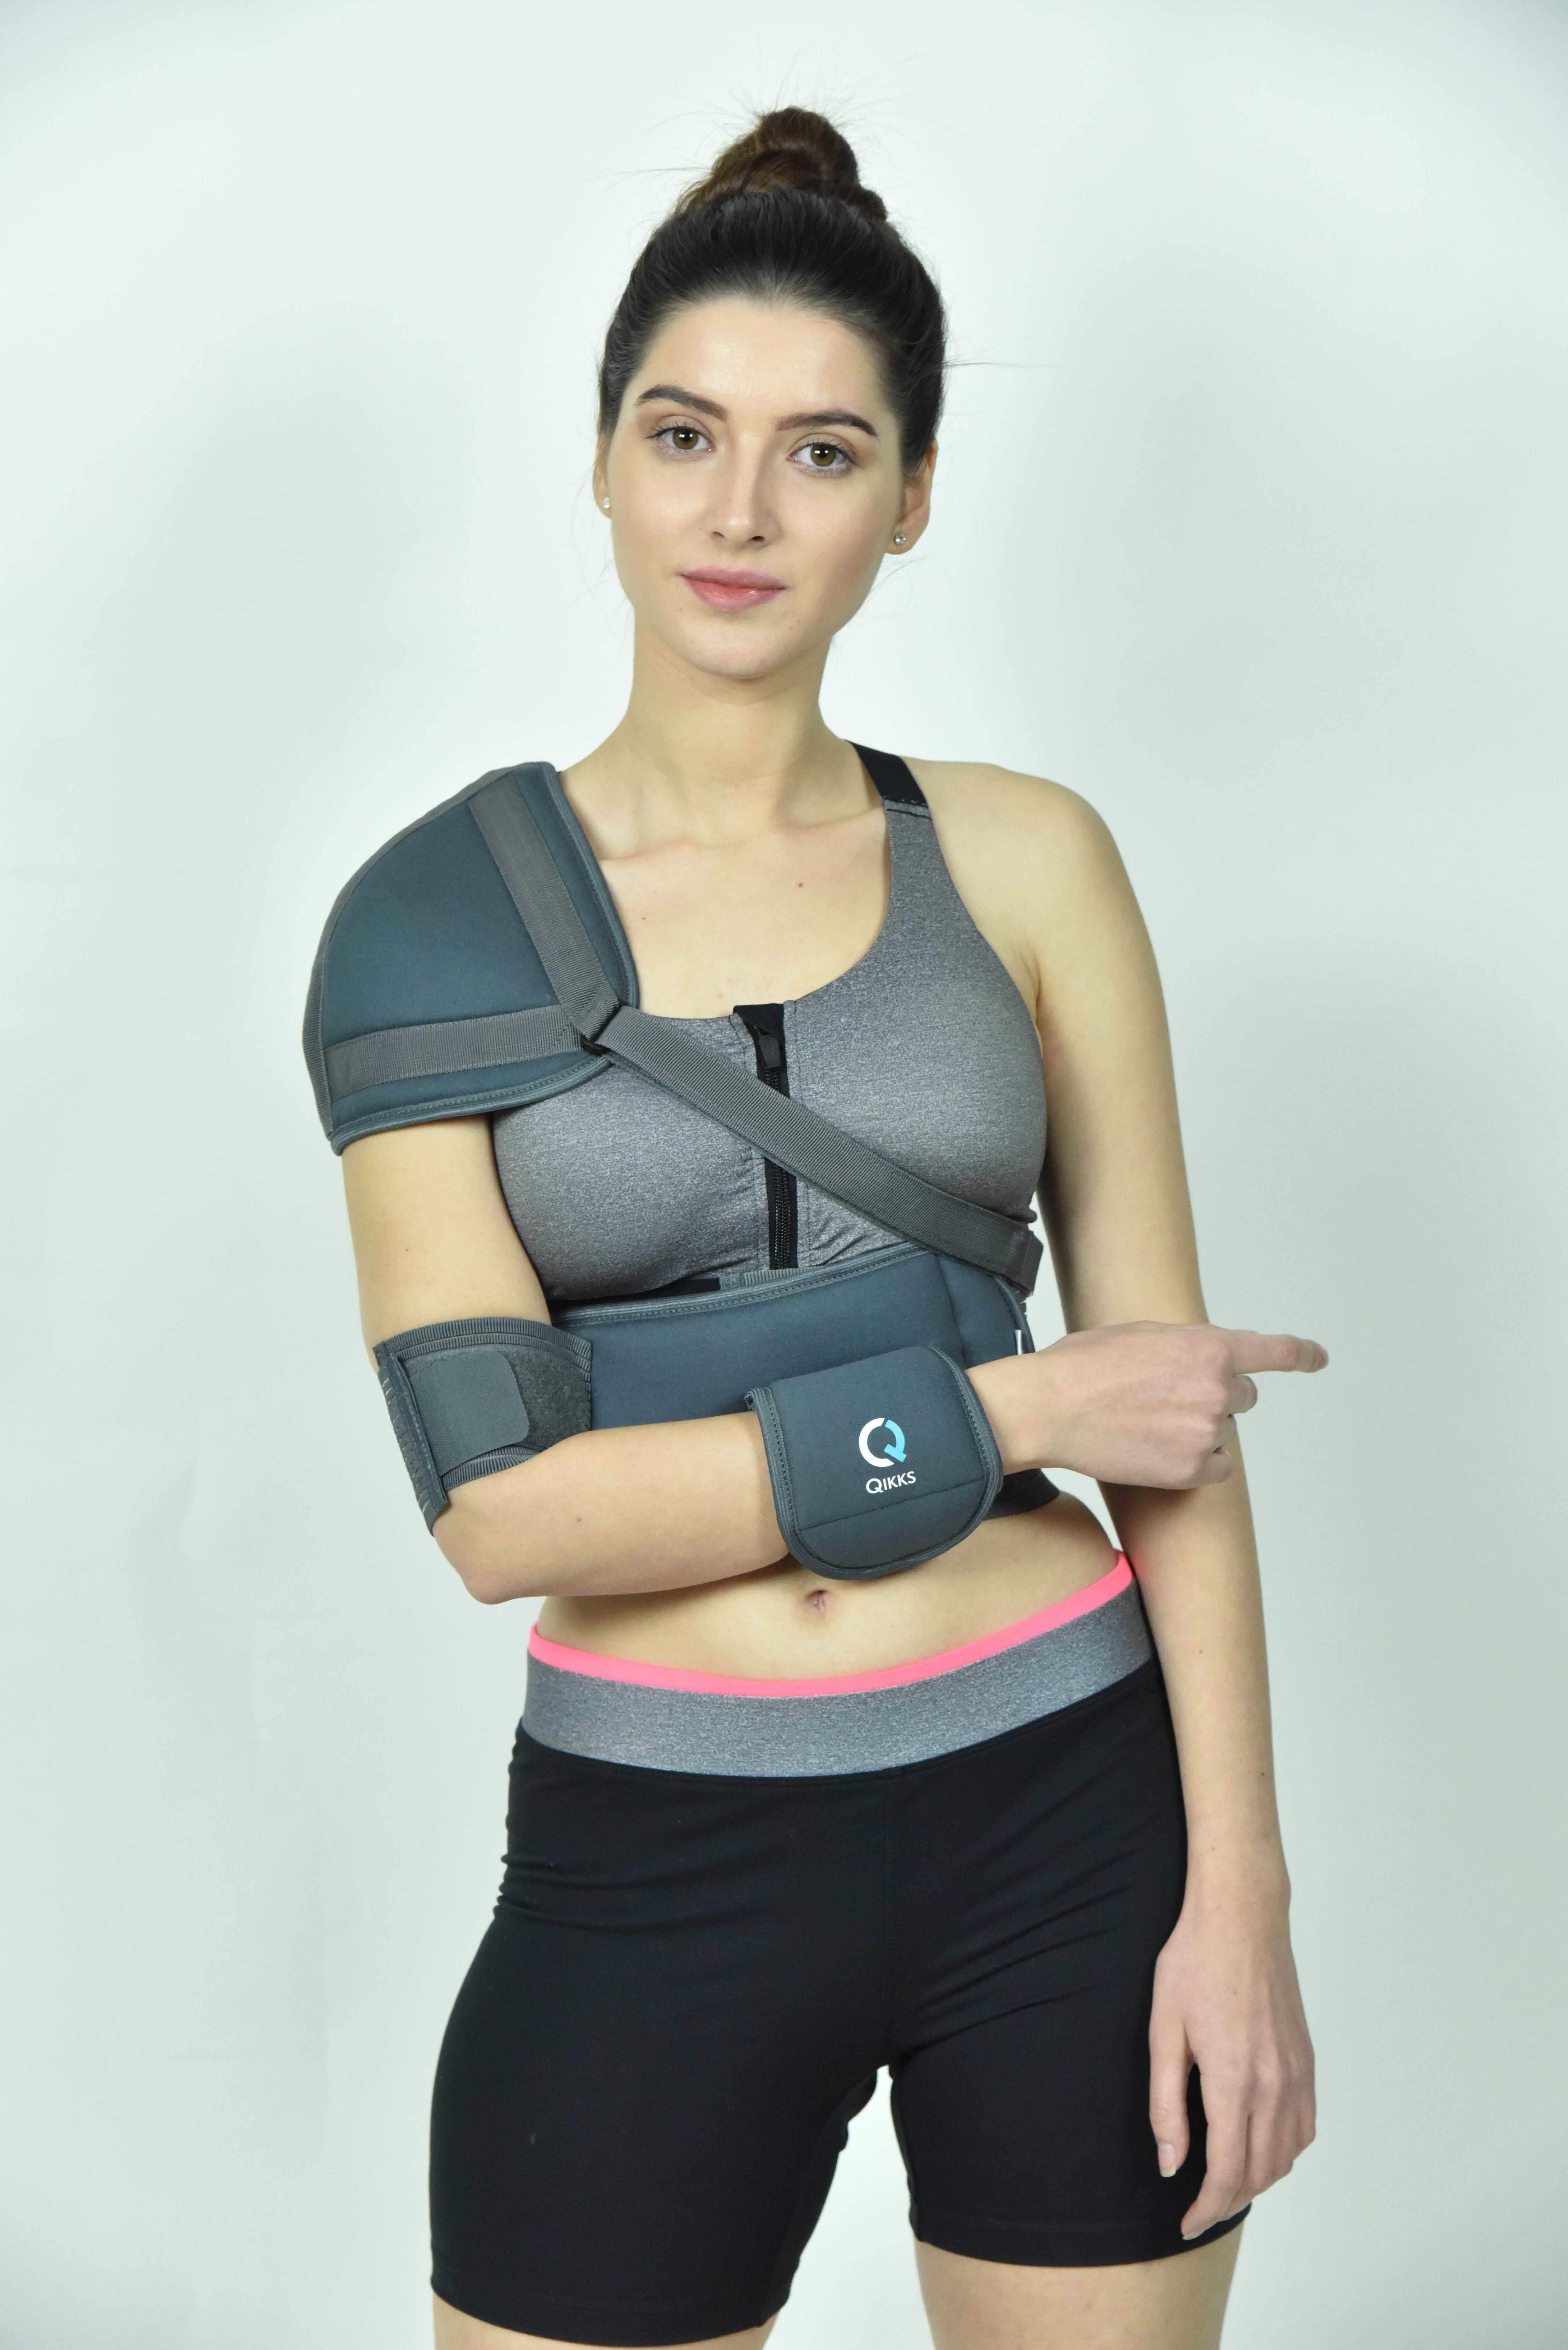 elastic shoulder support